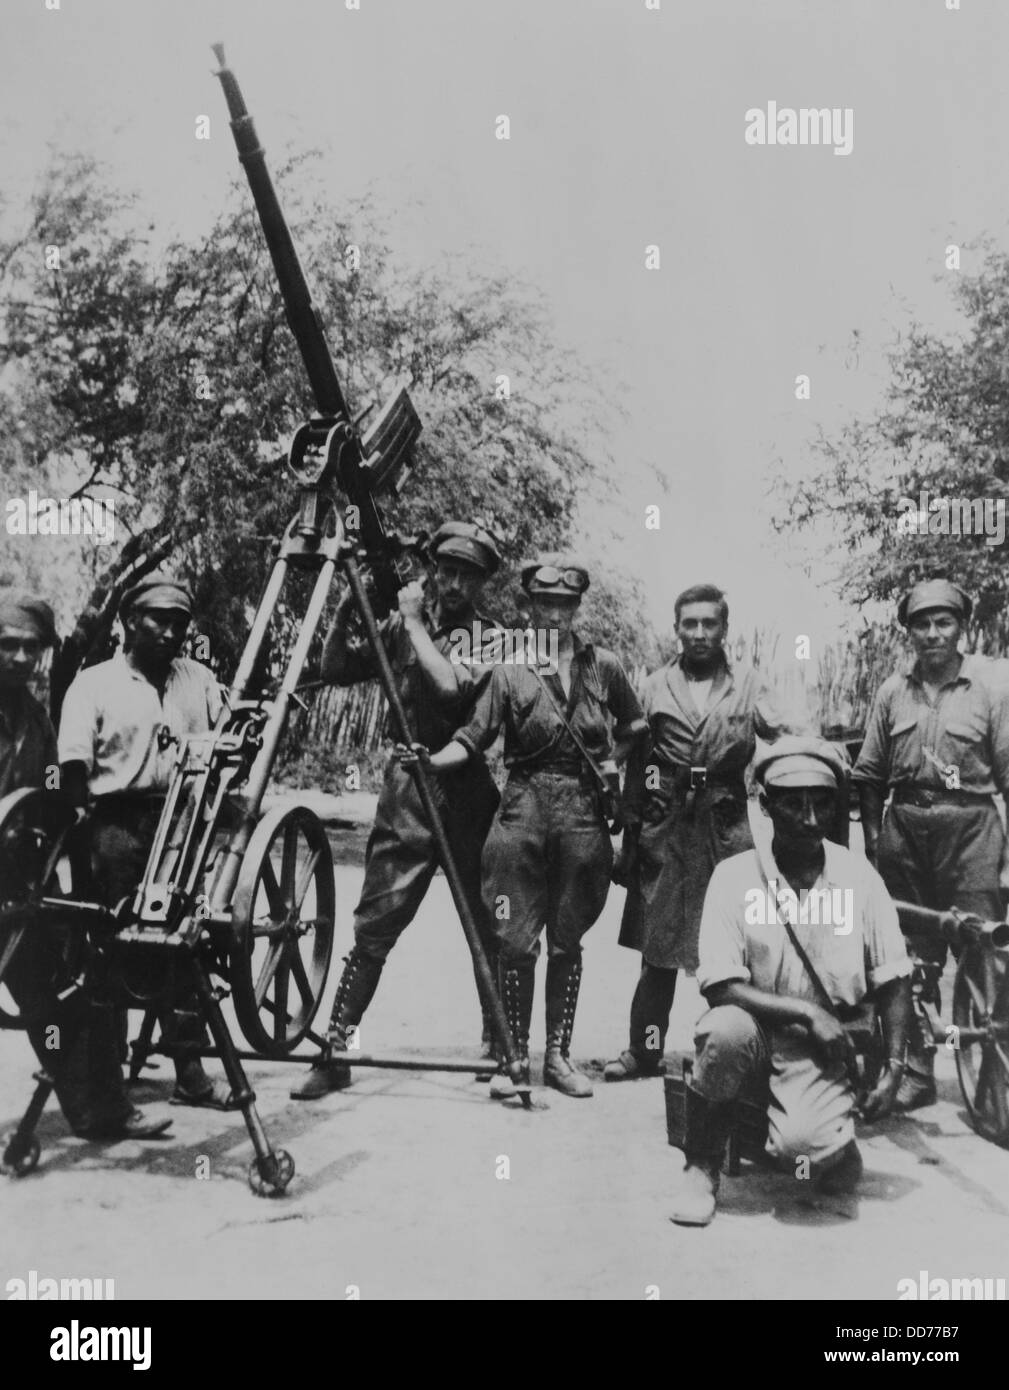 Los bolivianos anti tren-avión paraguayo en pistola de aire el 24 de mayo de 1934. La Guerra del Chaco se disputaron el Chaco Boreal desierto Foto de stock